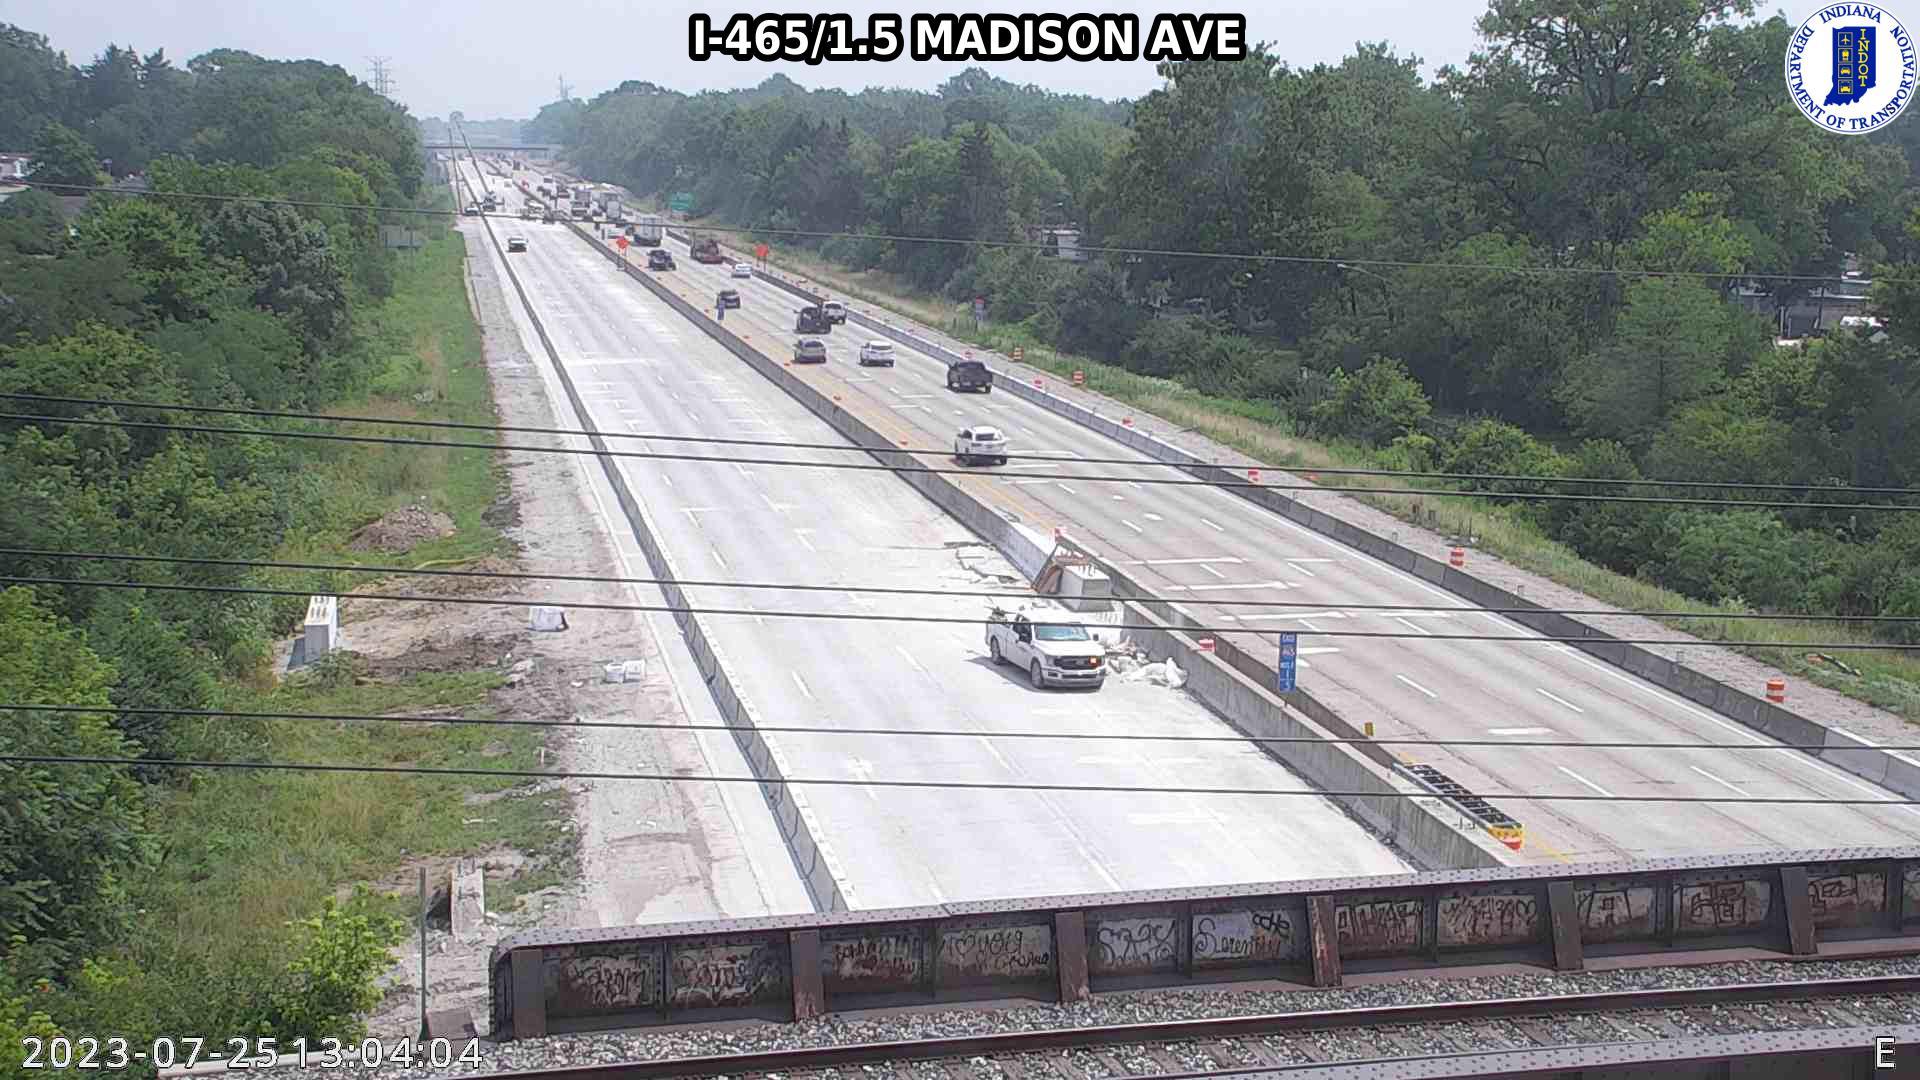 Indianapolis: I-465: I-465/1.5 MADISON AVE Traffic Camera